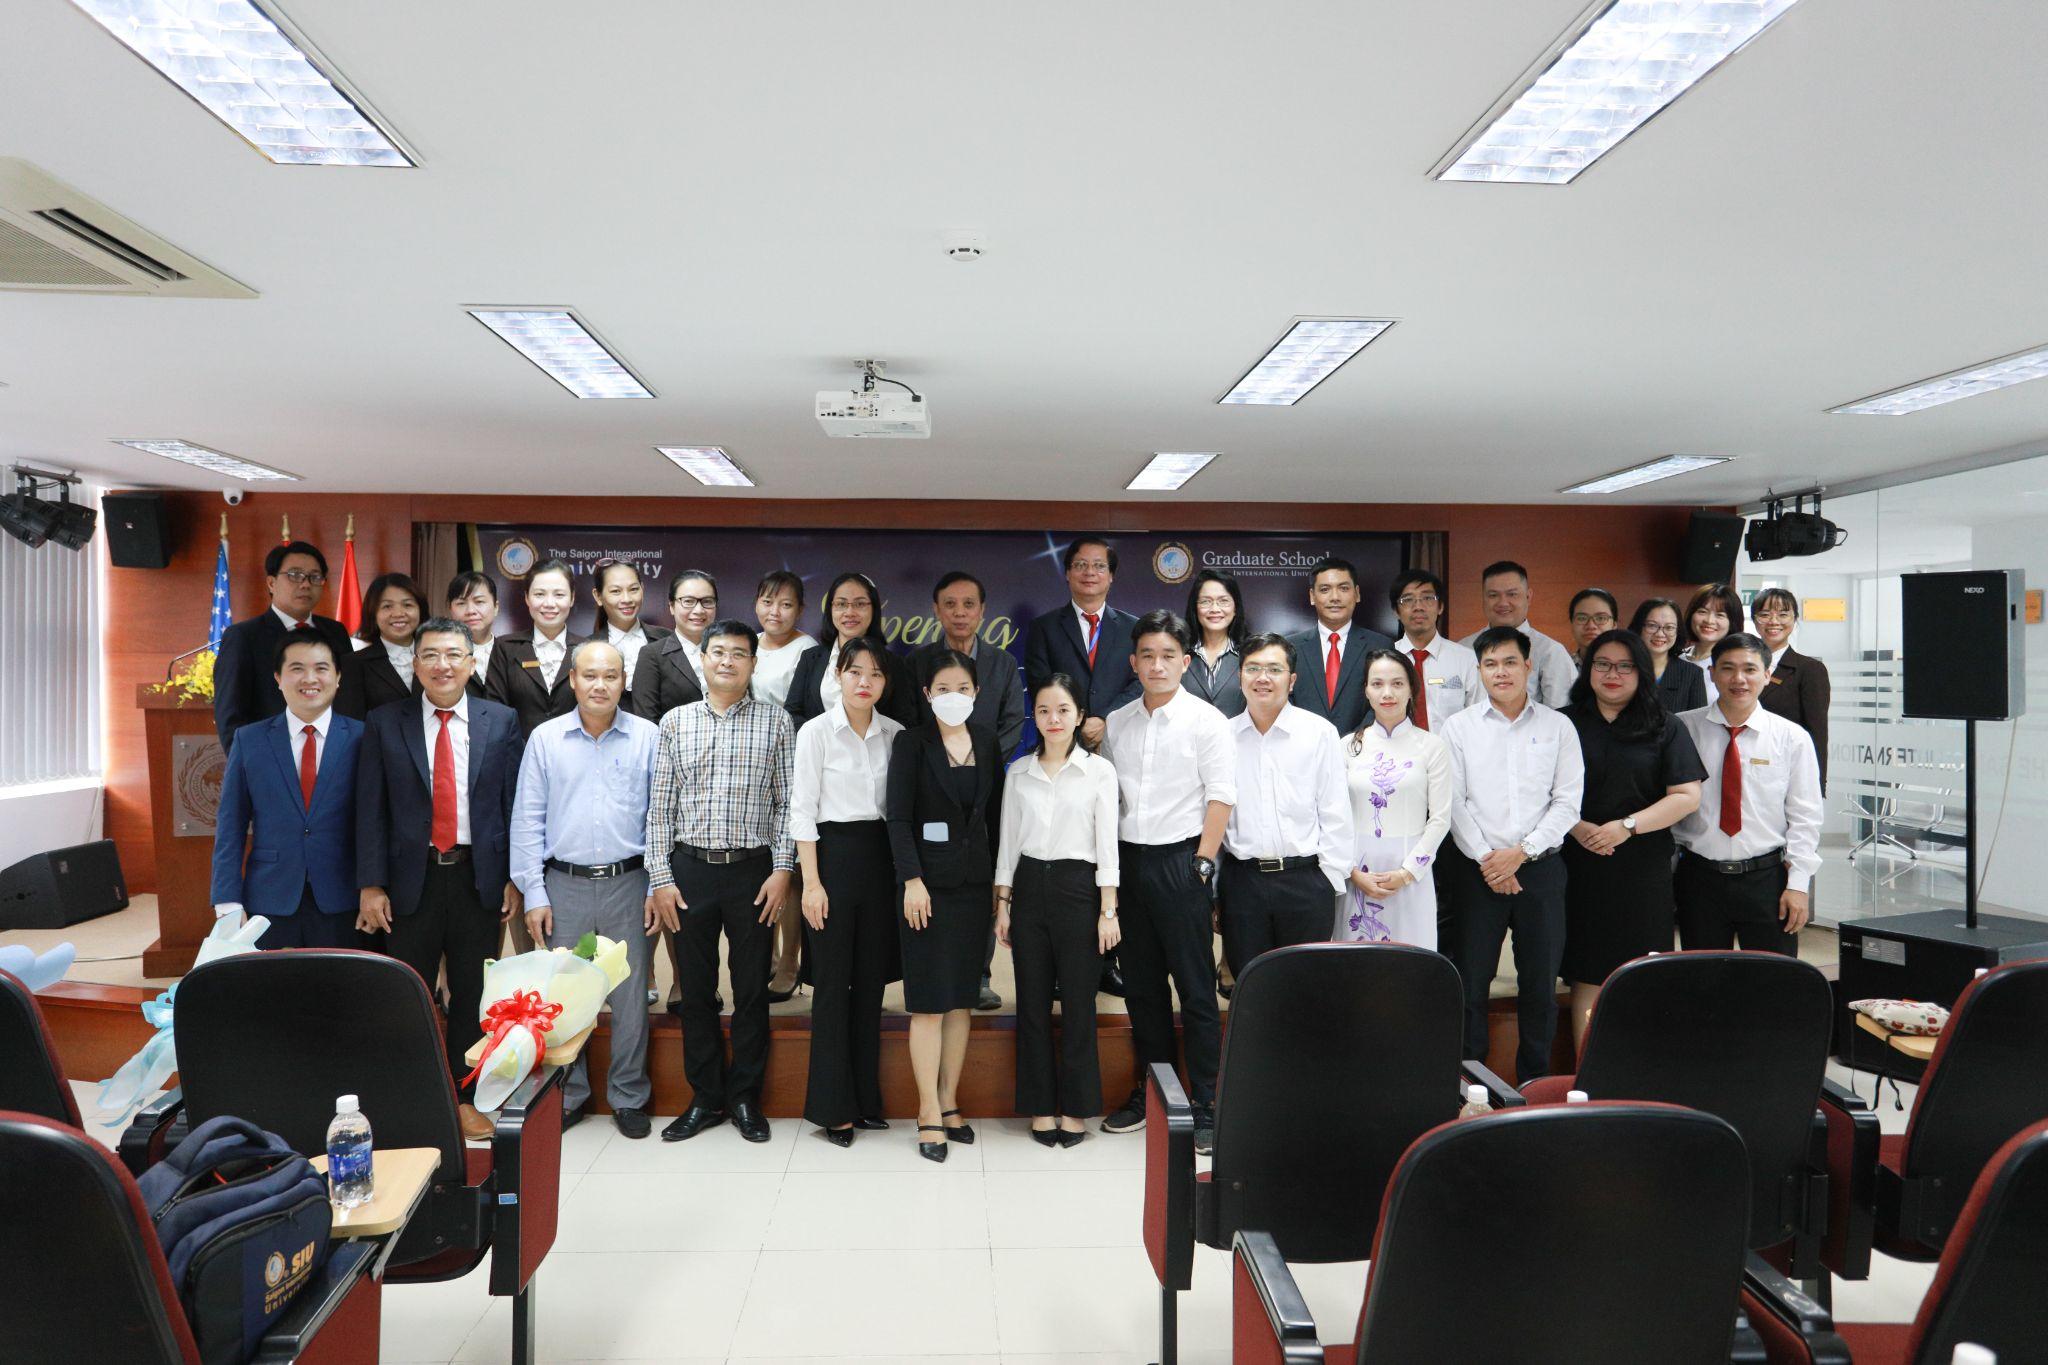 SIU tổ chức Lễ khai giảng Chương trình đào tạo trình độ Thạc sĩ đợt 1 năm 2022